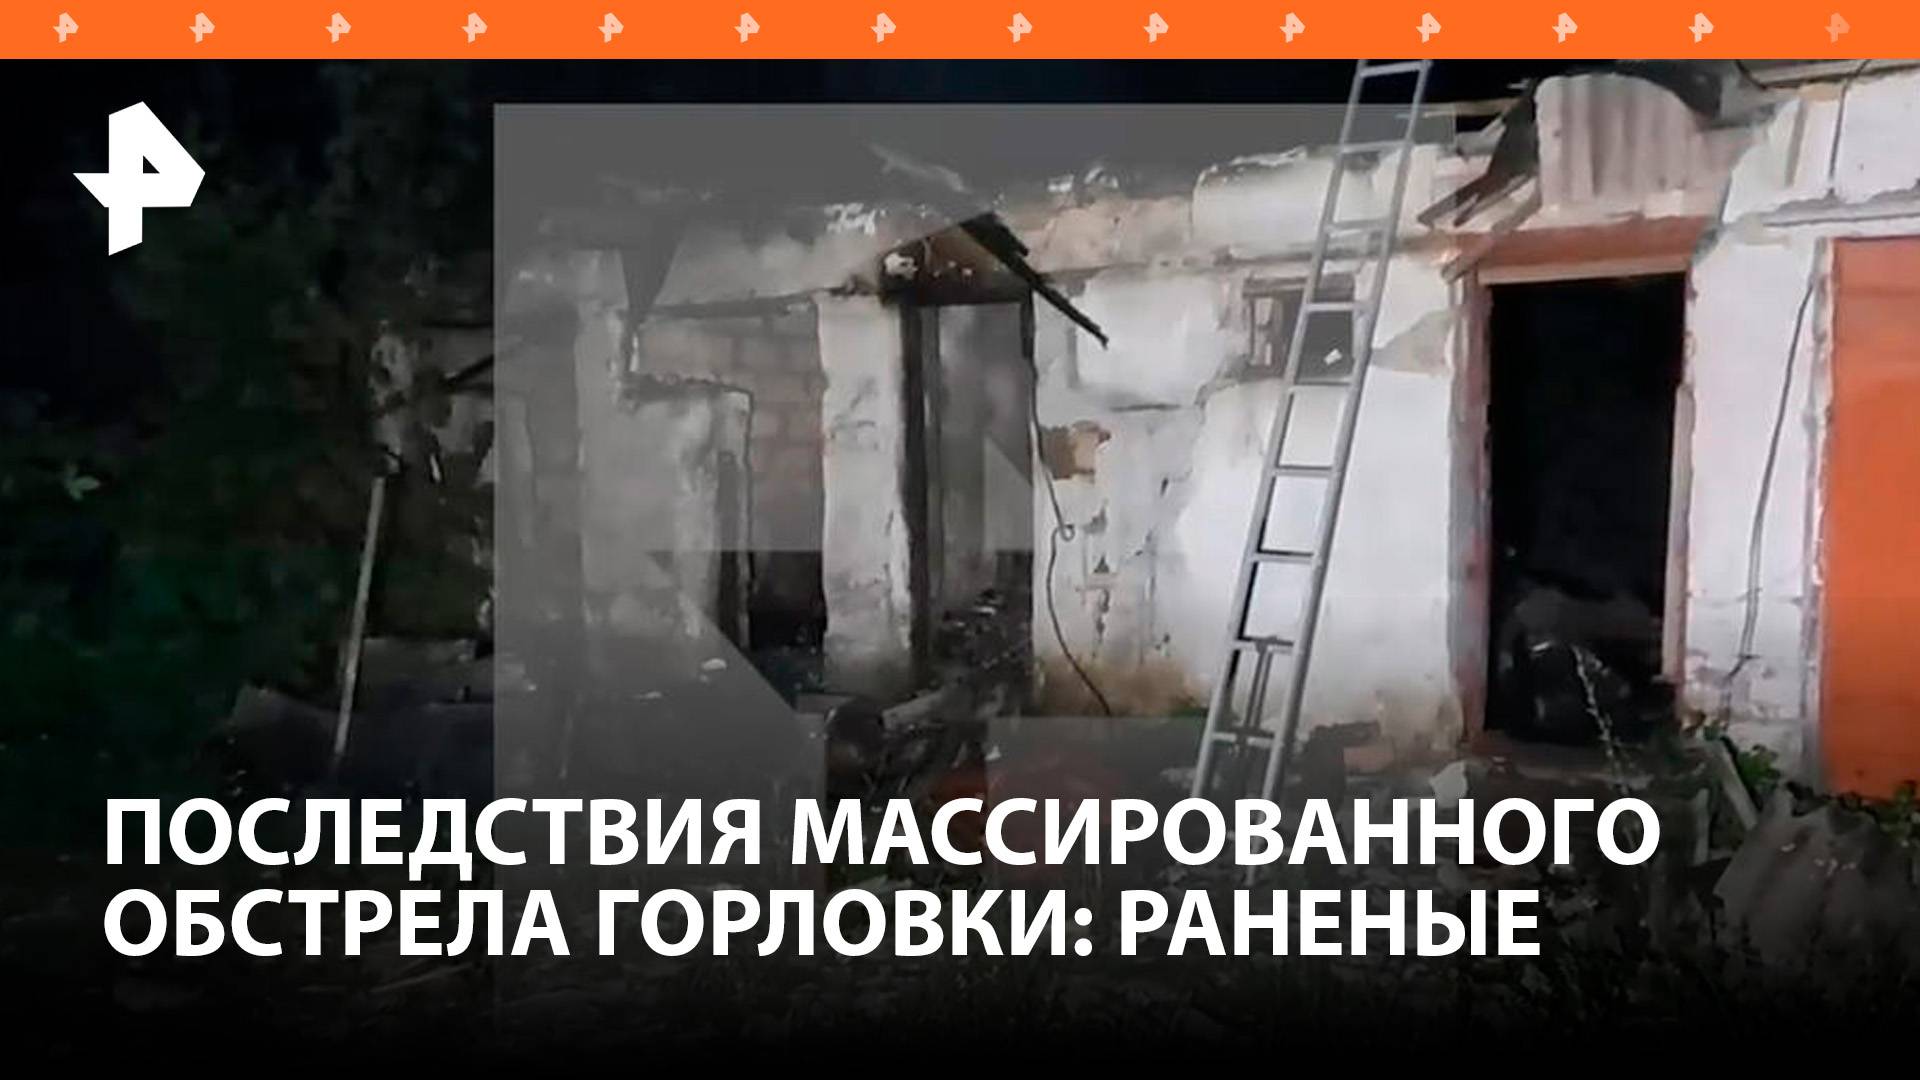 Четверо пожарных пострадали в результате удара ВСУ в Горловке / РЕН Новости